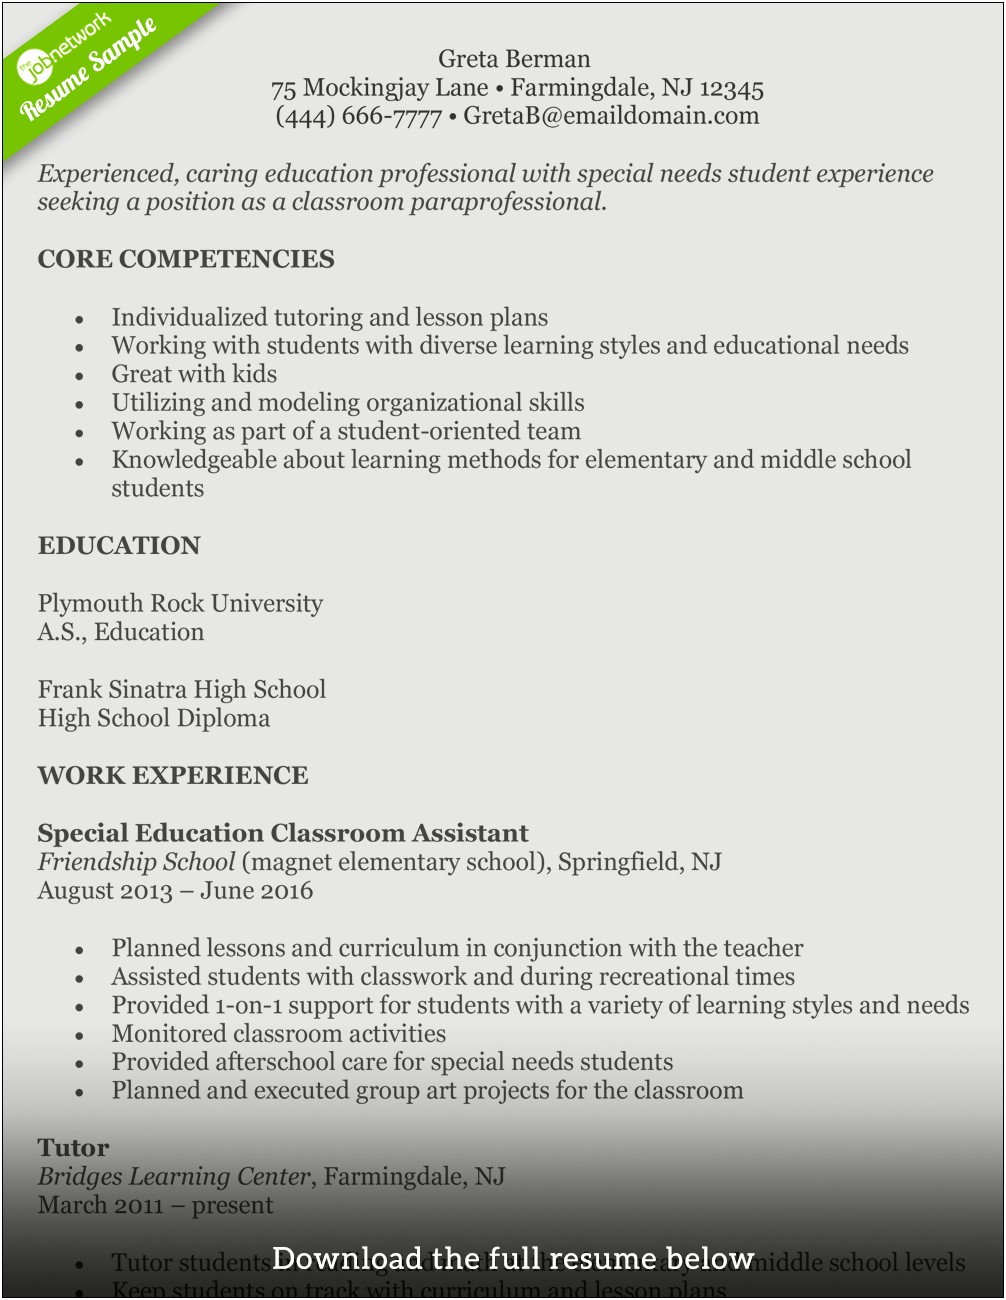 Sample Resume Of An Elementary Teacher